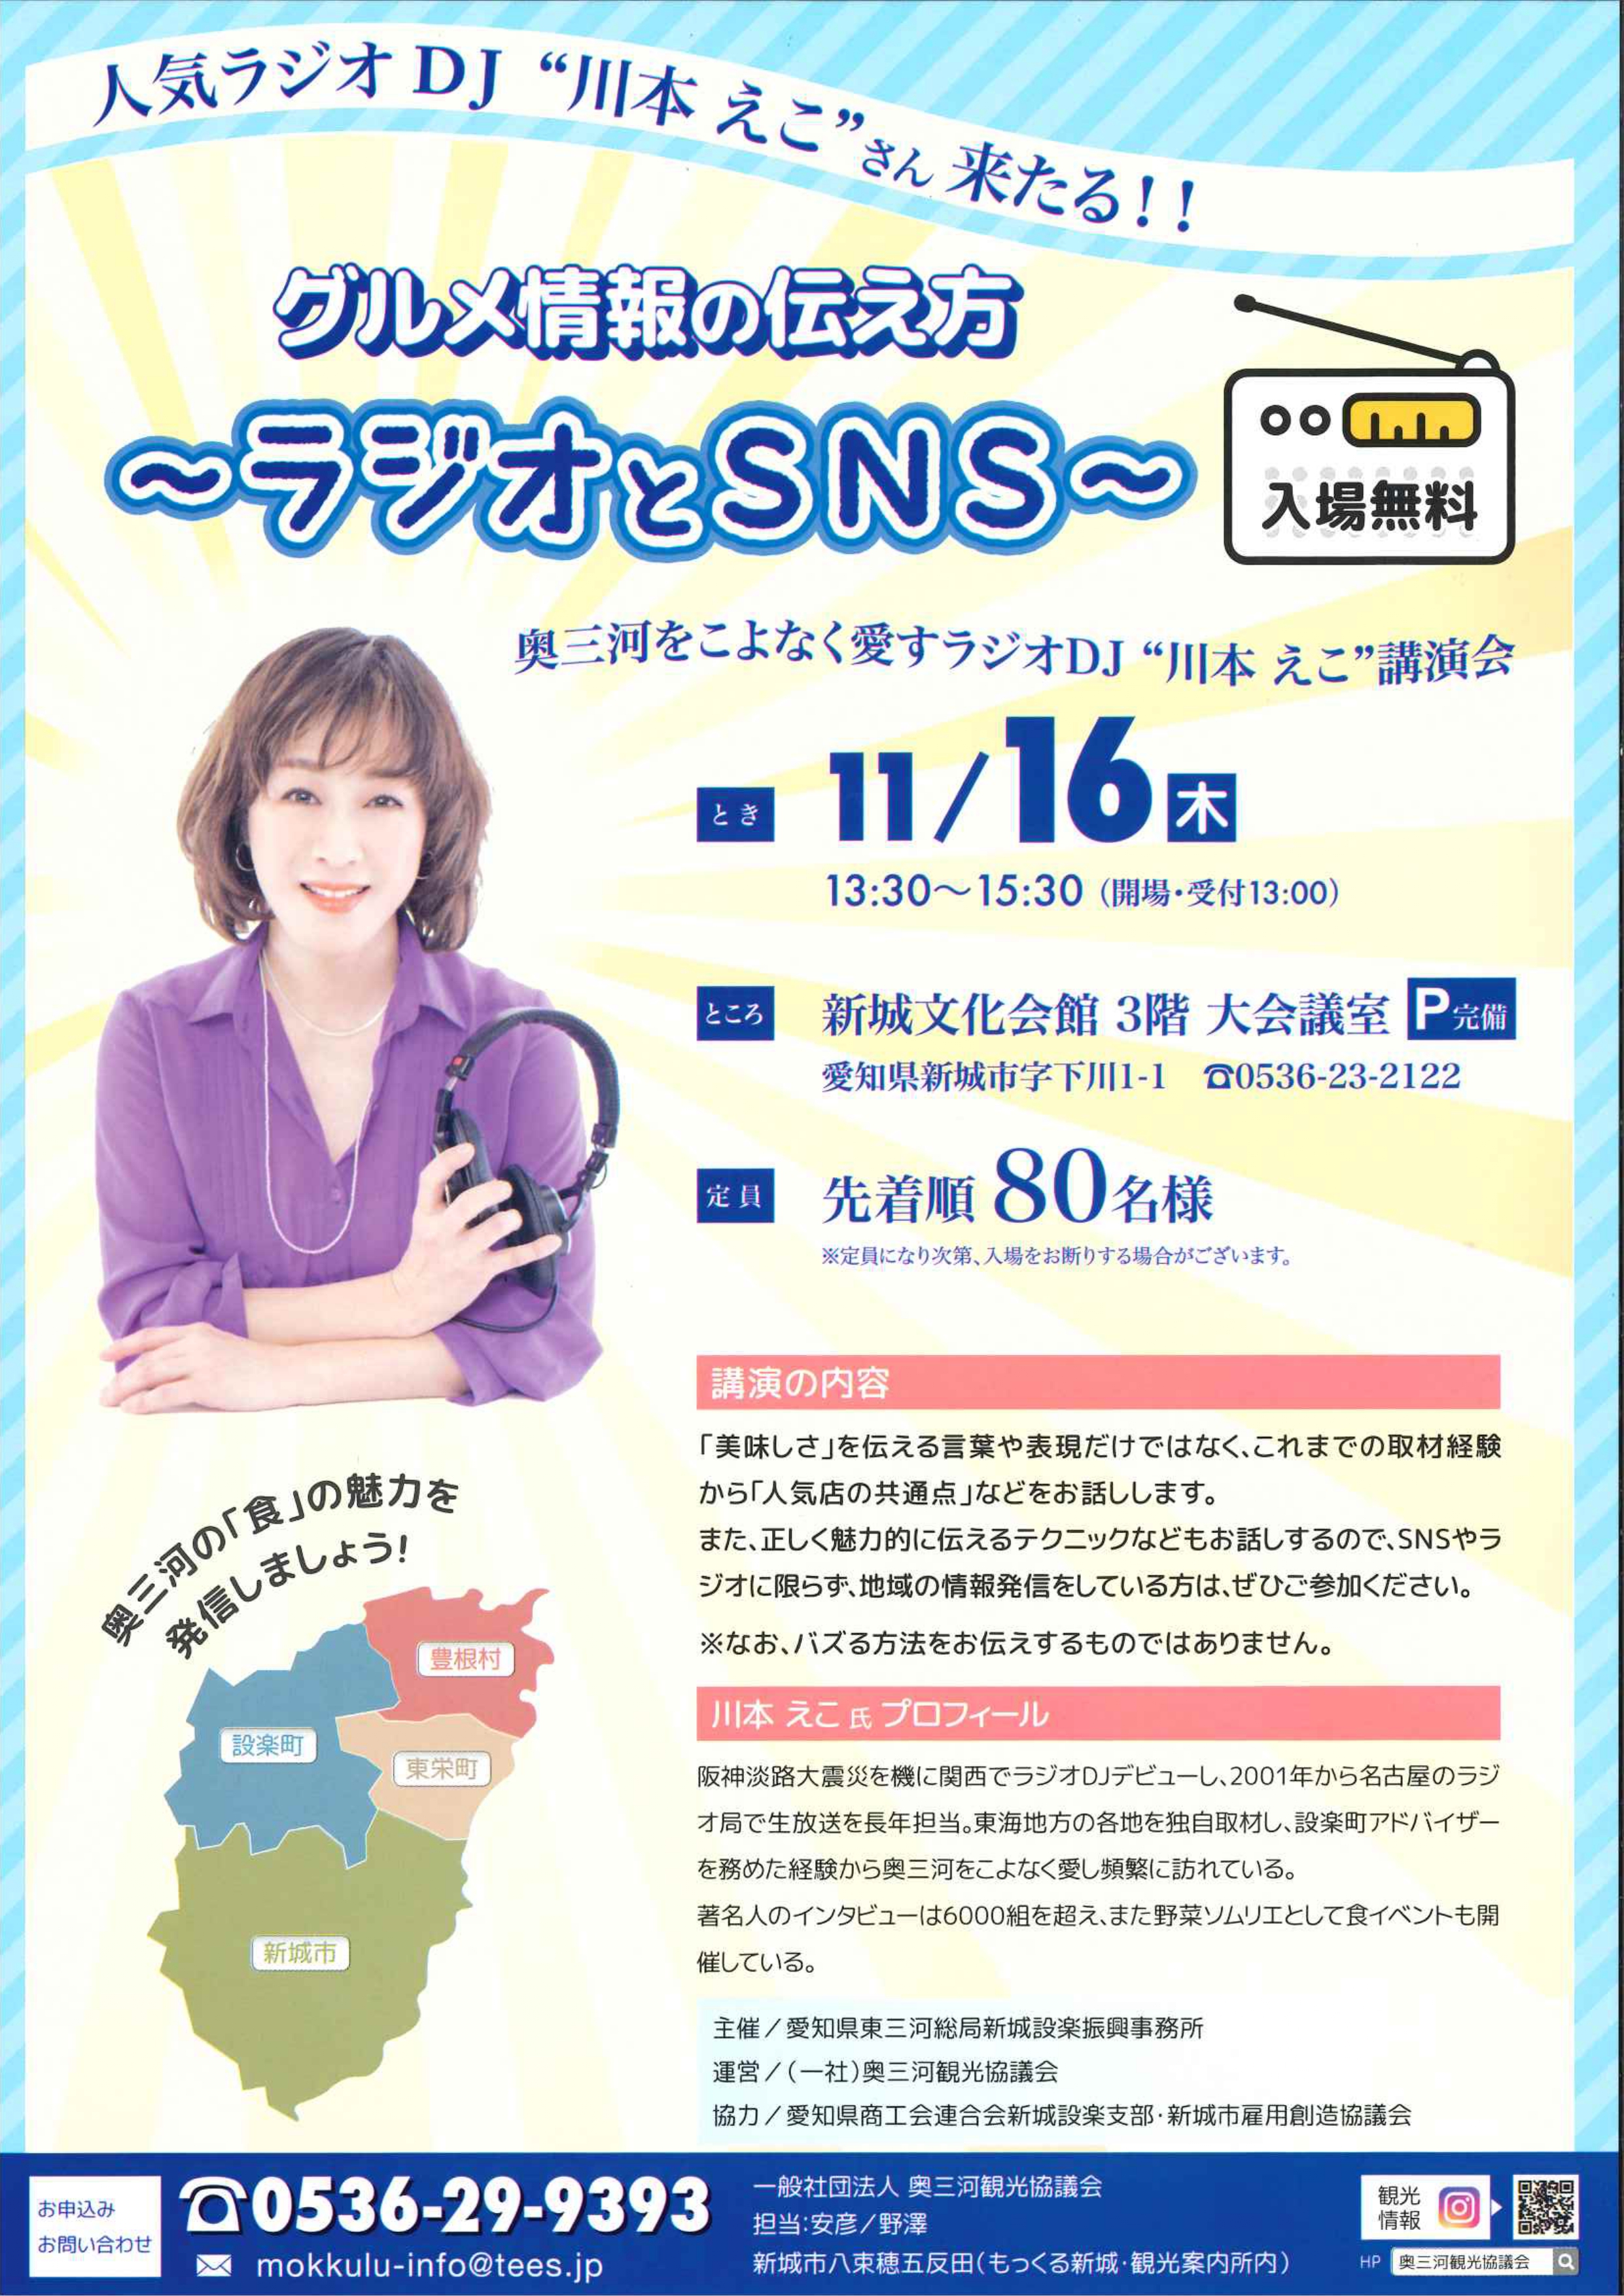 人気ラジオDJ 川本えこさんによる講演会『グルメ情報の伝え方～ラジオとSNS～』開催について